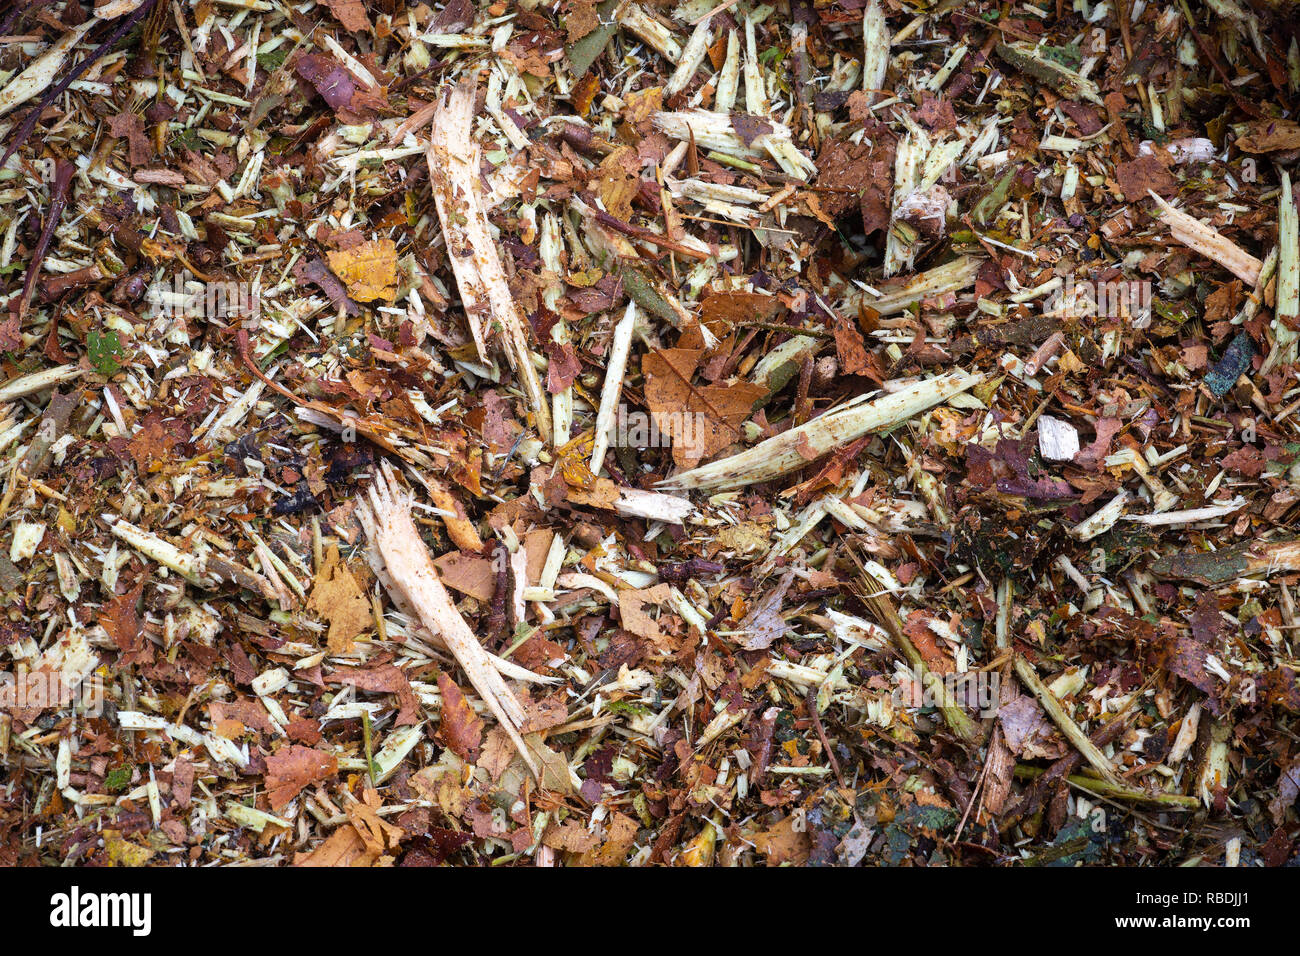 Une photo d'un aux copeaux de bois raméal (RCW) heap. Utilisés comme paillis, les copeaux servent à rétablir l'activité biologique du sol. Banque D'Images